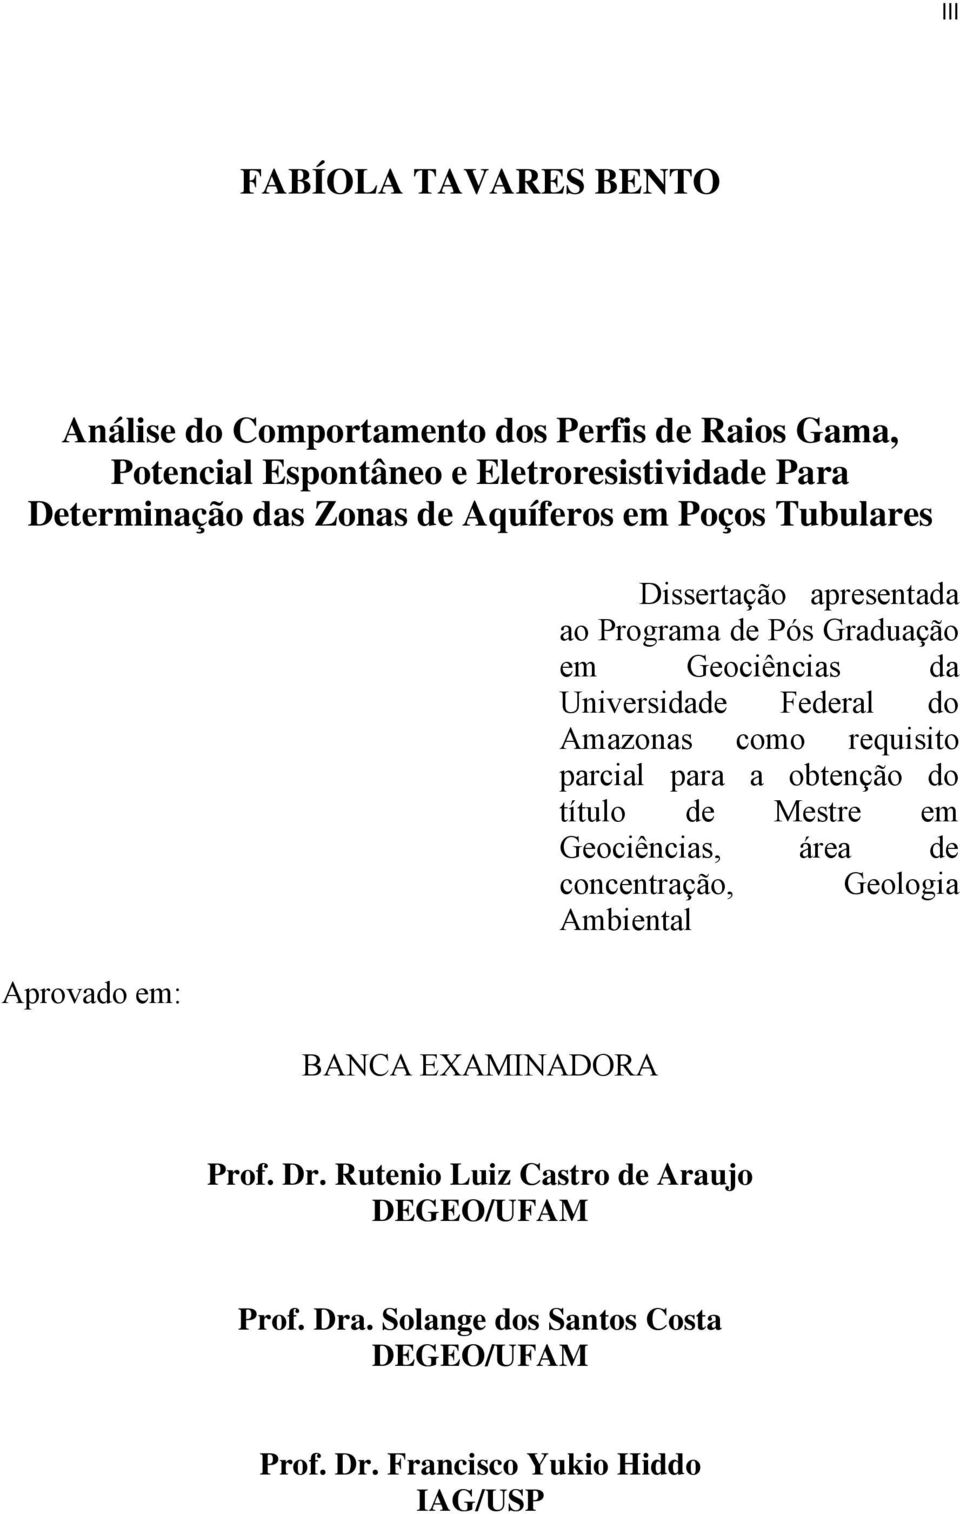 Universidade Federal do Amazonas como requisito parcial para a obtenção do título de Mestre em Geociências, área de concentração, Geologia